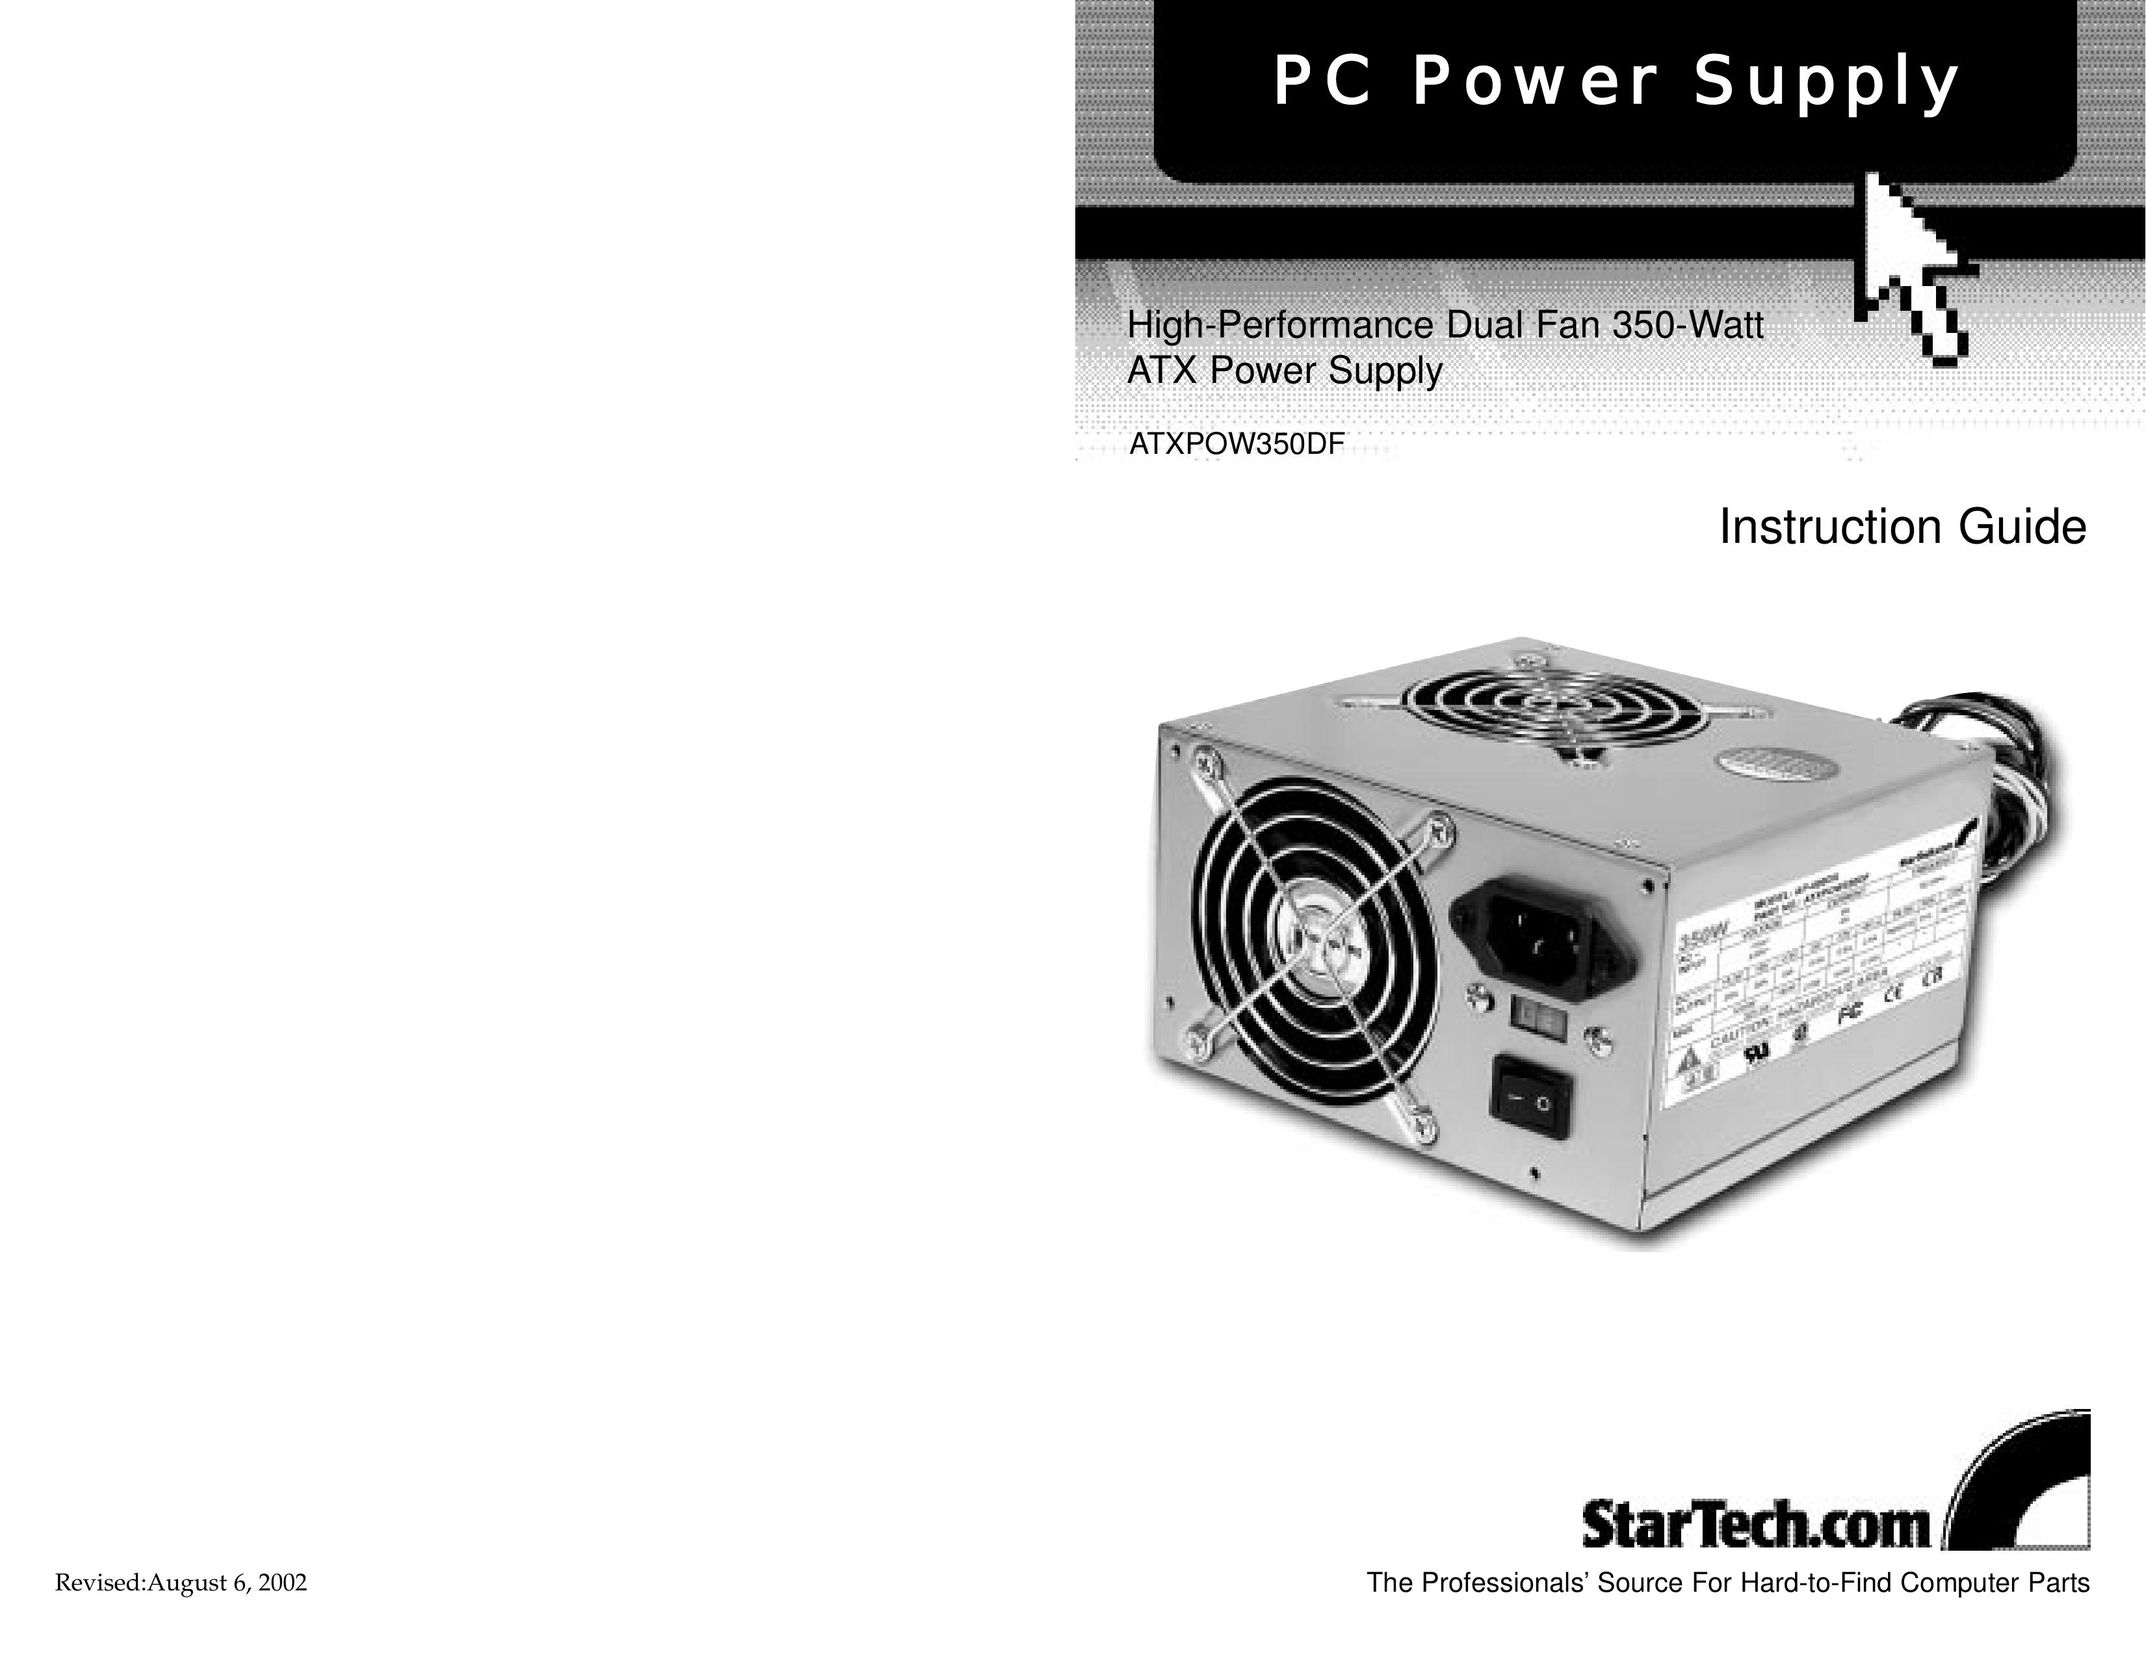 StarTech.com ATXPOW350DF Power Supply User Manual